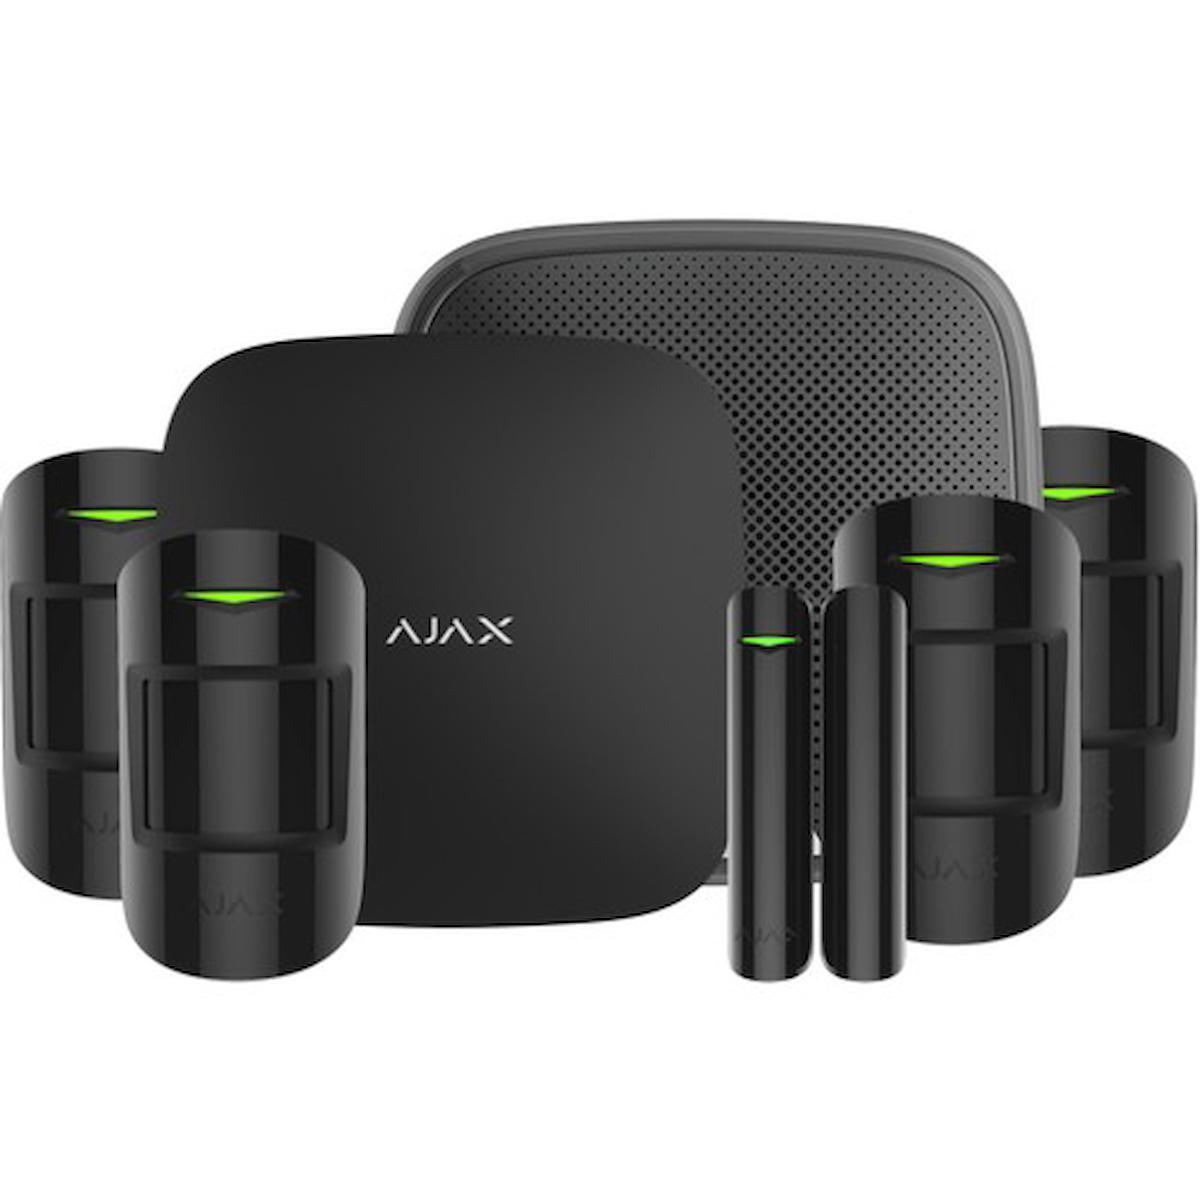 Ajax Starter Kit 5 Dedektörlü Alarm Sistemi ve Harici Siren Dahil Paket Sistem